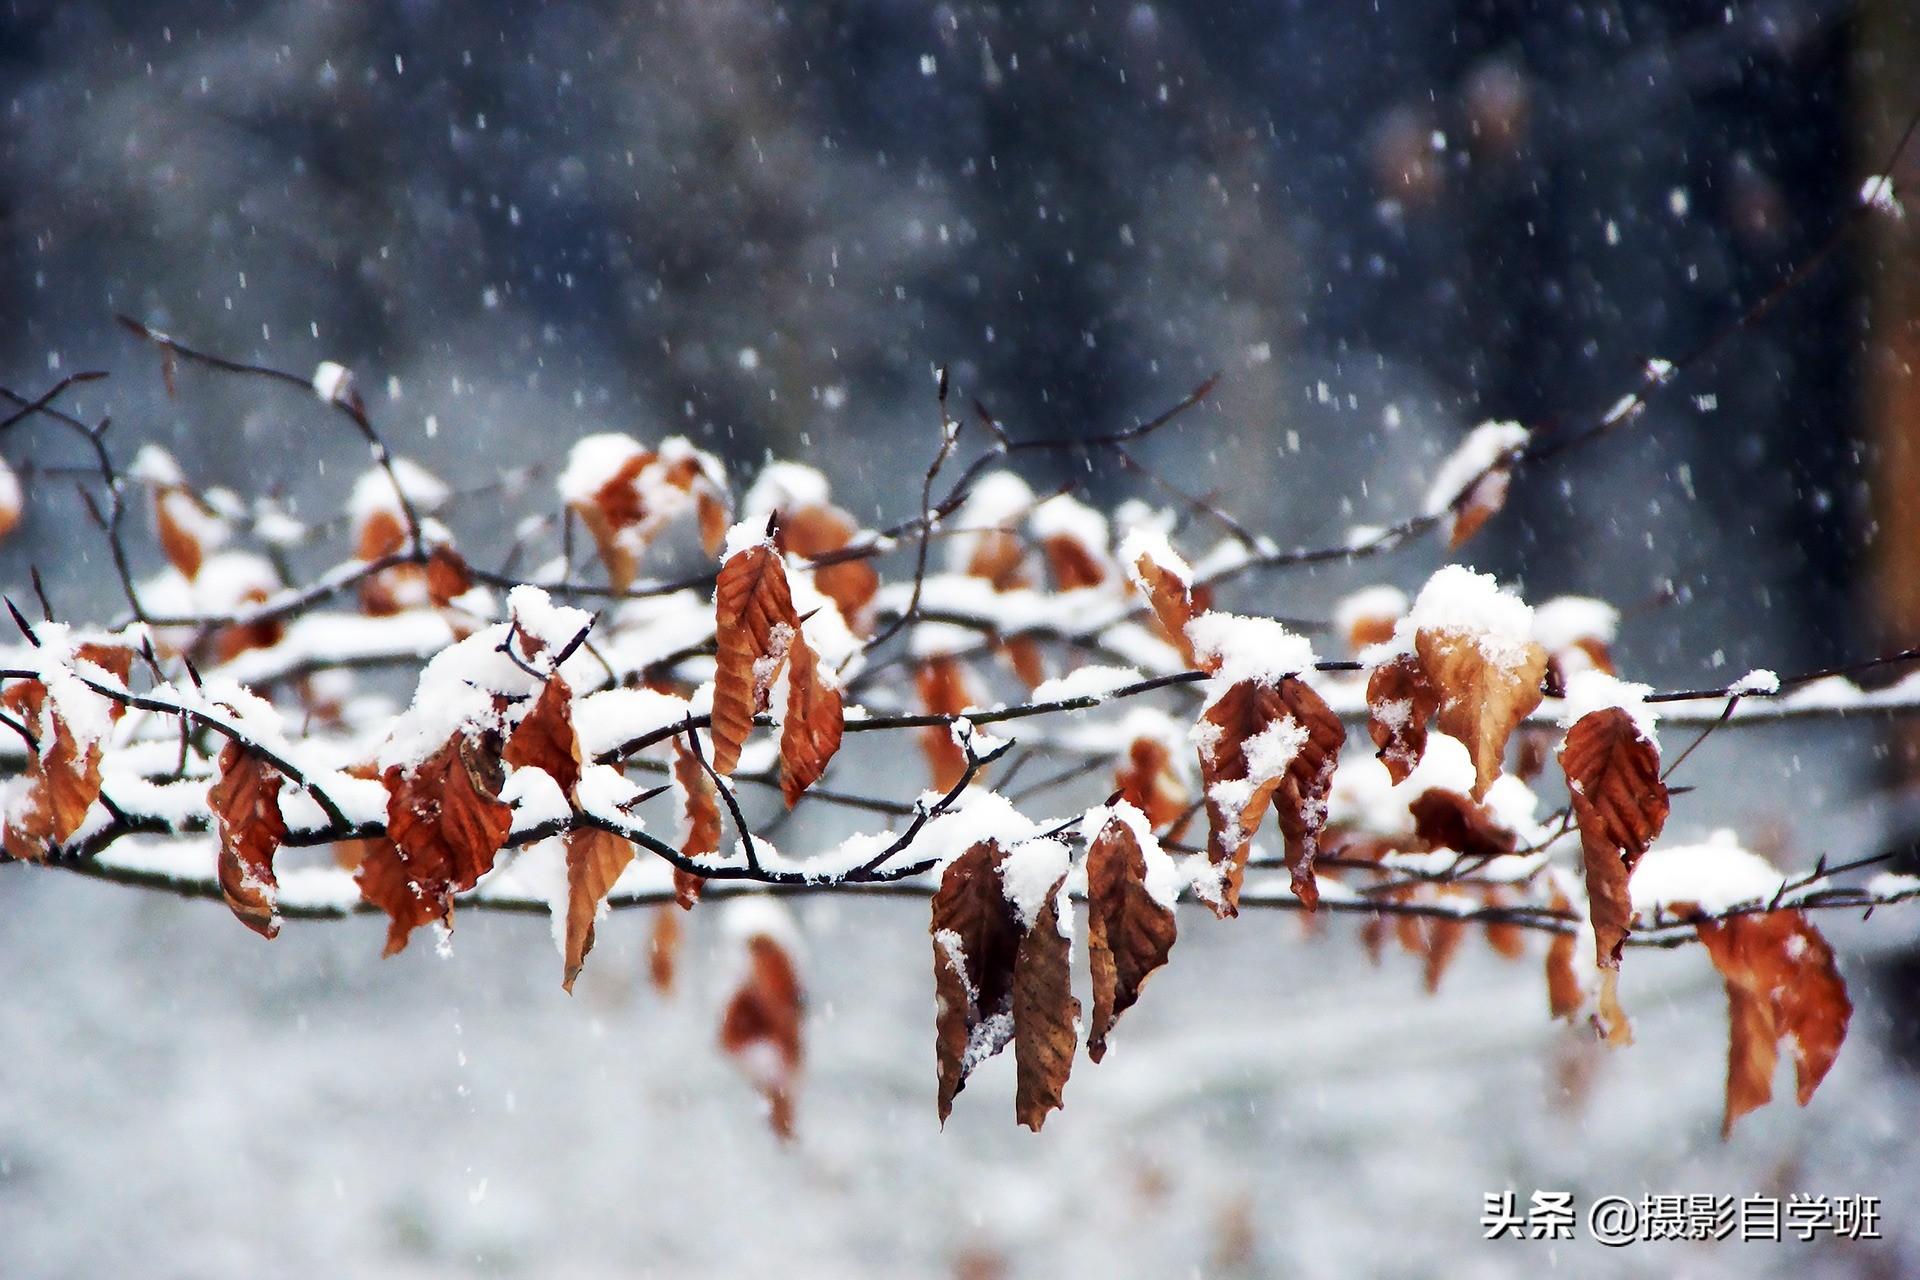 冬季摄影不容错过的6个题材，图文并茂帮你理清思路，提高拍摄率